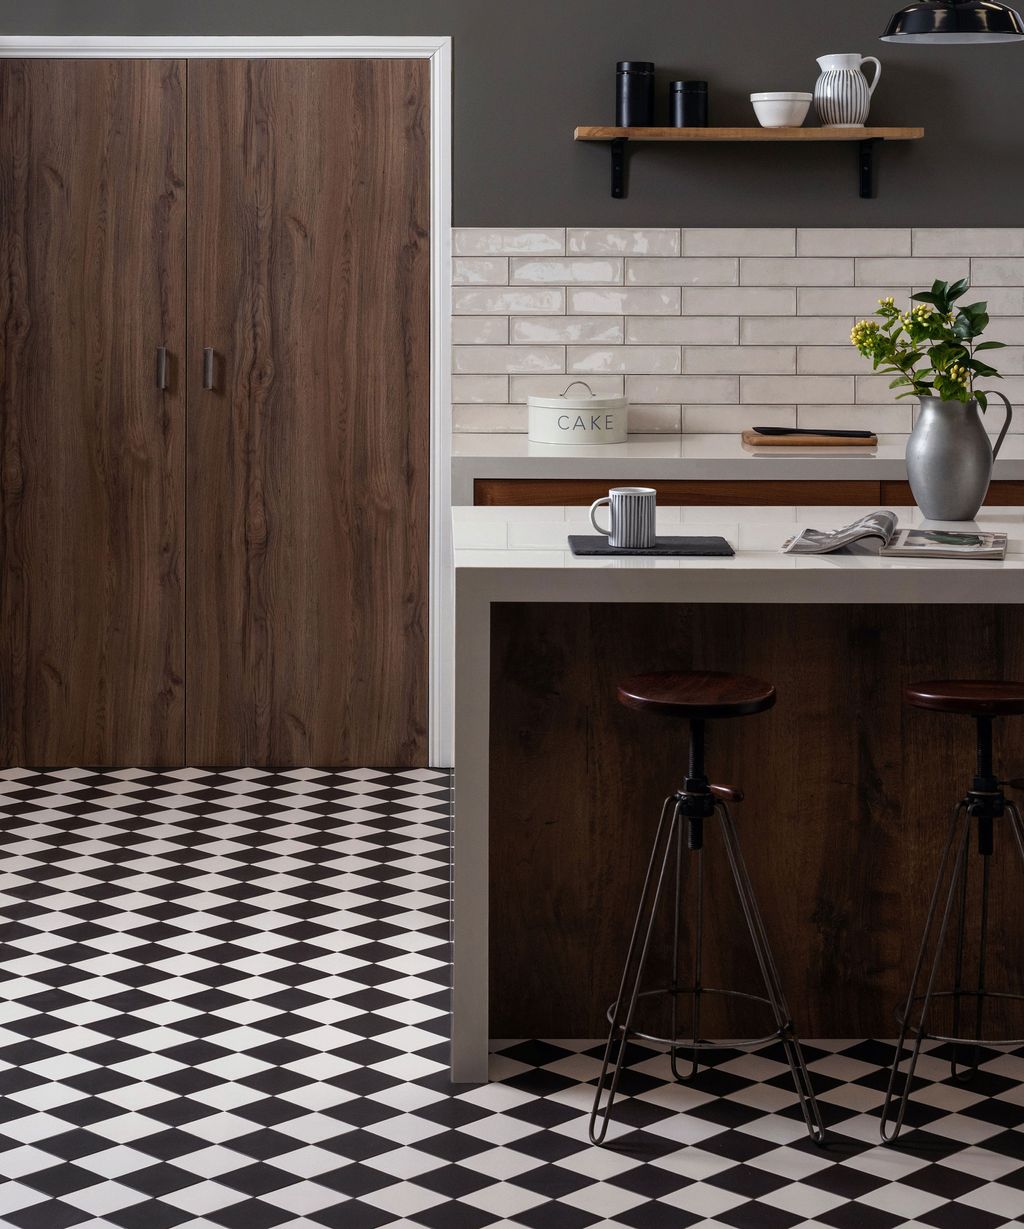 Kitchen floor tile ideas – 16 stylish tile designs for kitchen floors ...